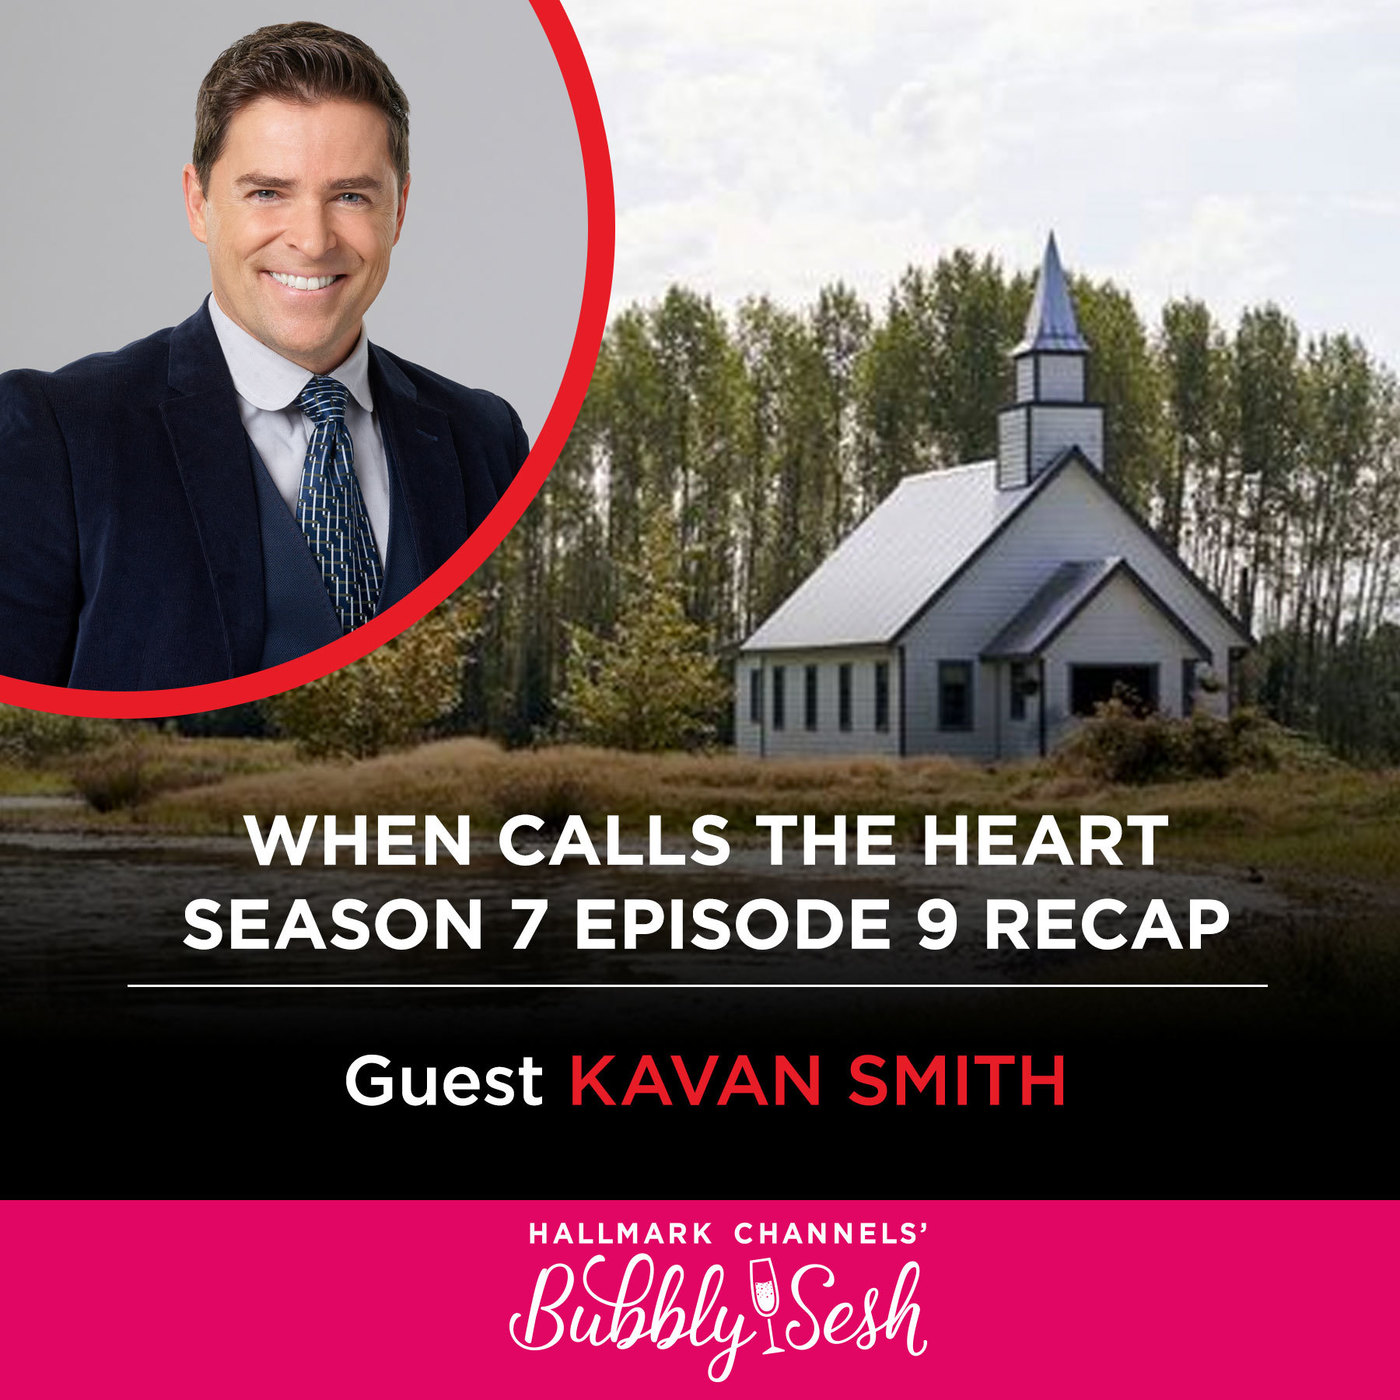 When Calls the Heart Season 7, Episode 9 Recap with Guest Kavan Smith 